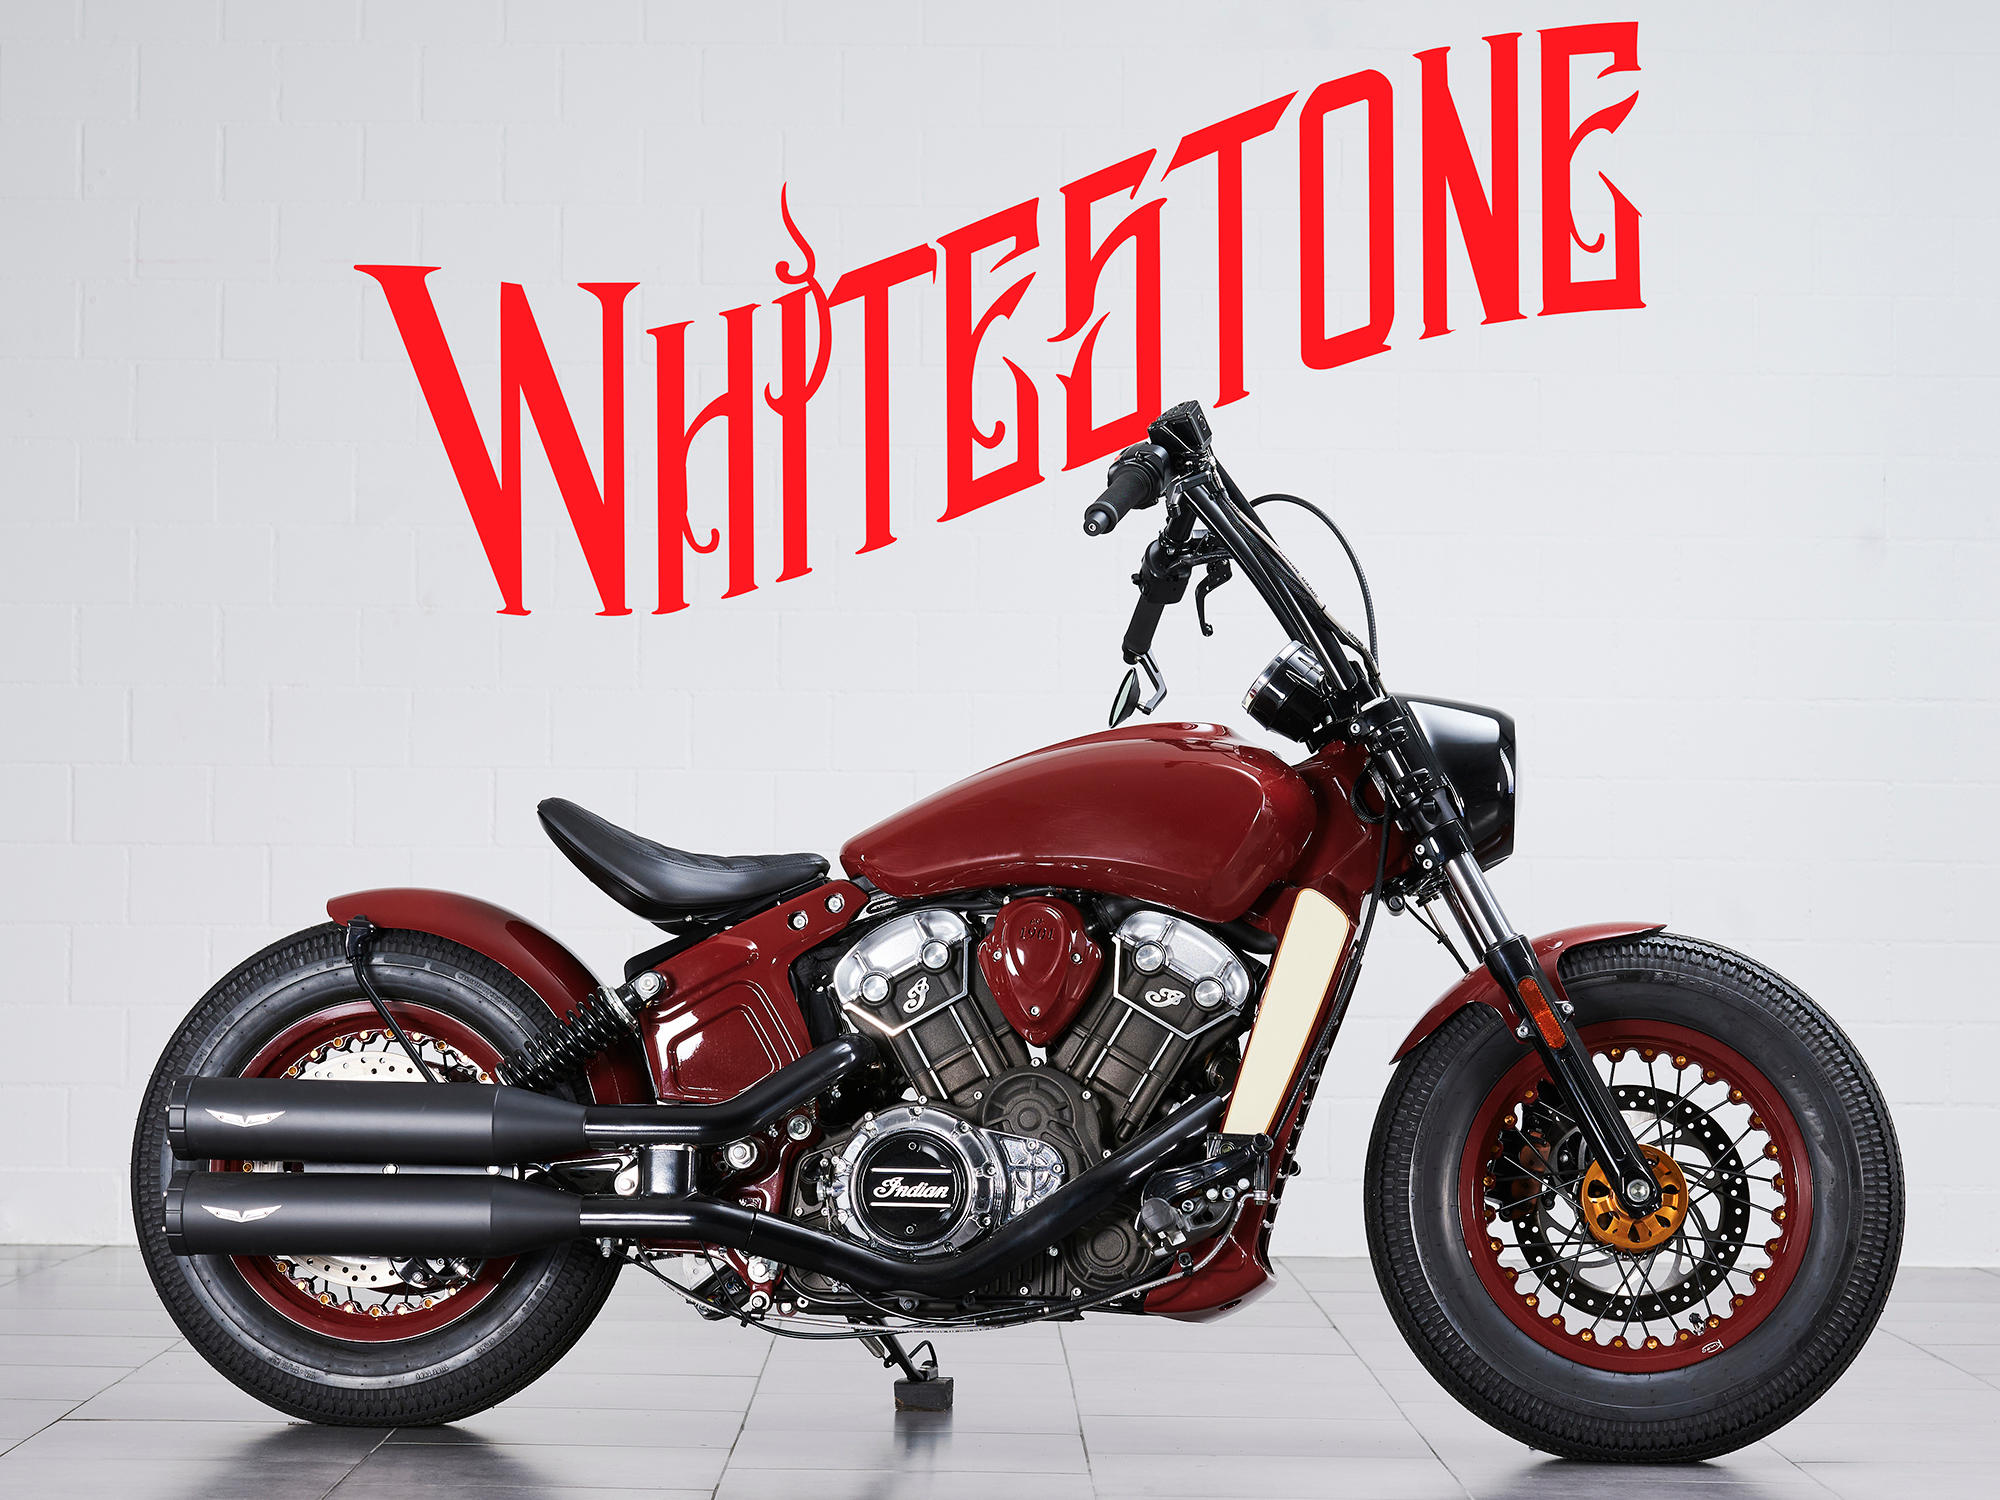 Bilder Whitestone Motocycles AG